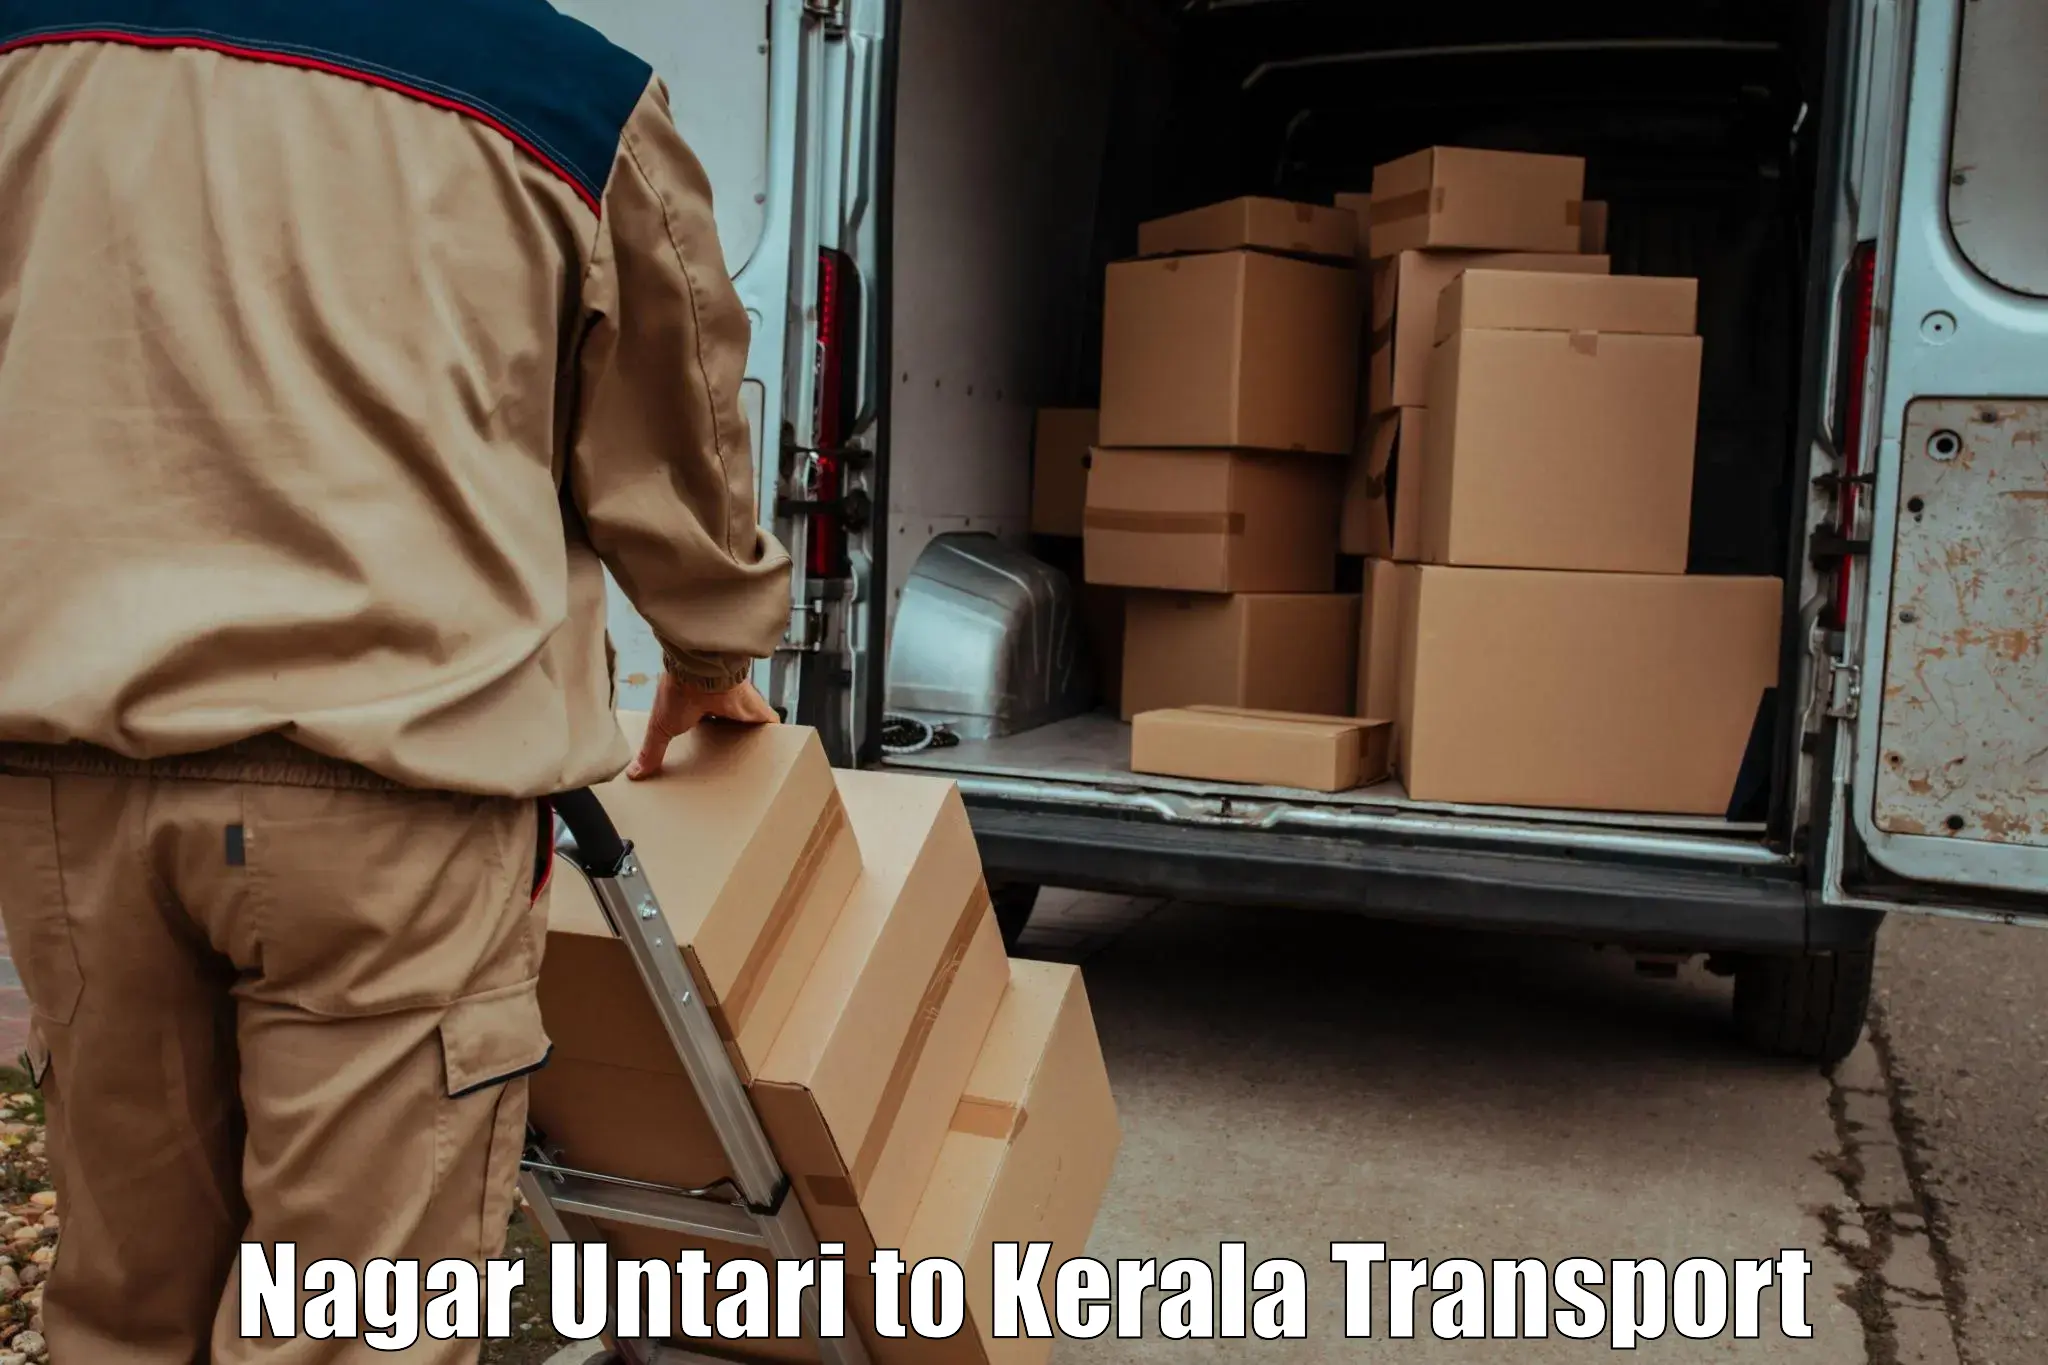 Online transport booking Nagar Untari to Kerala University Thiruvananthapuram